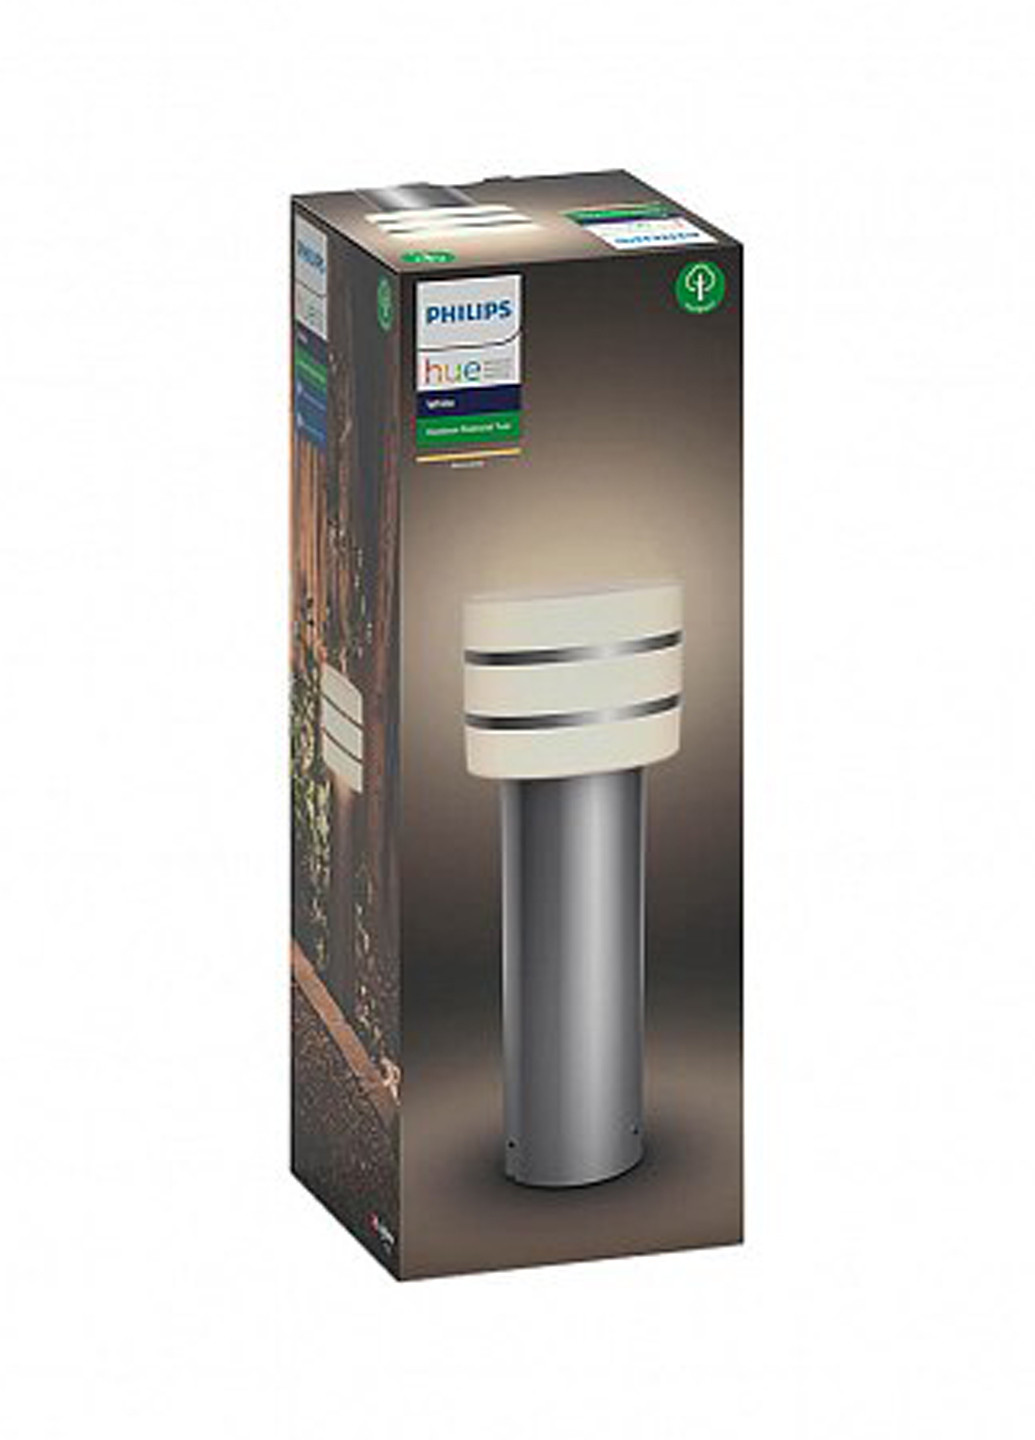 Смарт-світильник Tuar pedestal inox 1x9.5W 230V (17405/47 / P0) Philips смарт tuar pedestal inox 1x9.5w 230v (17405/47/p0) (142289774)